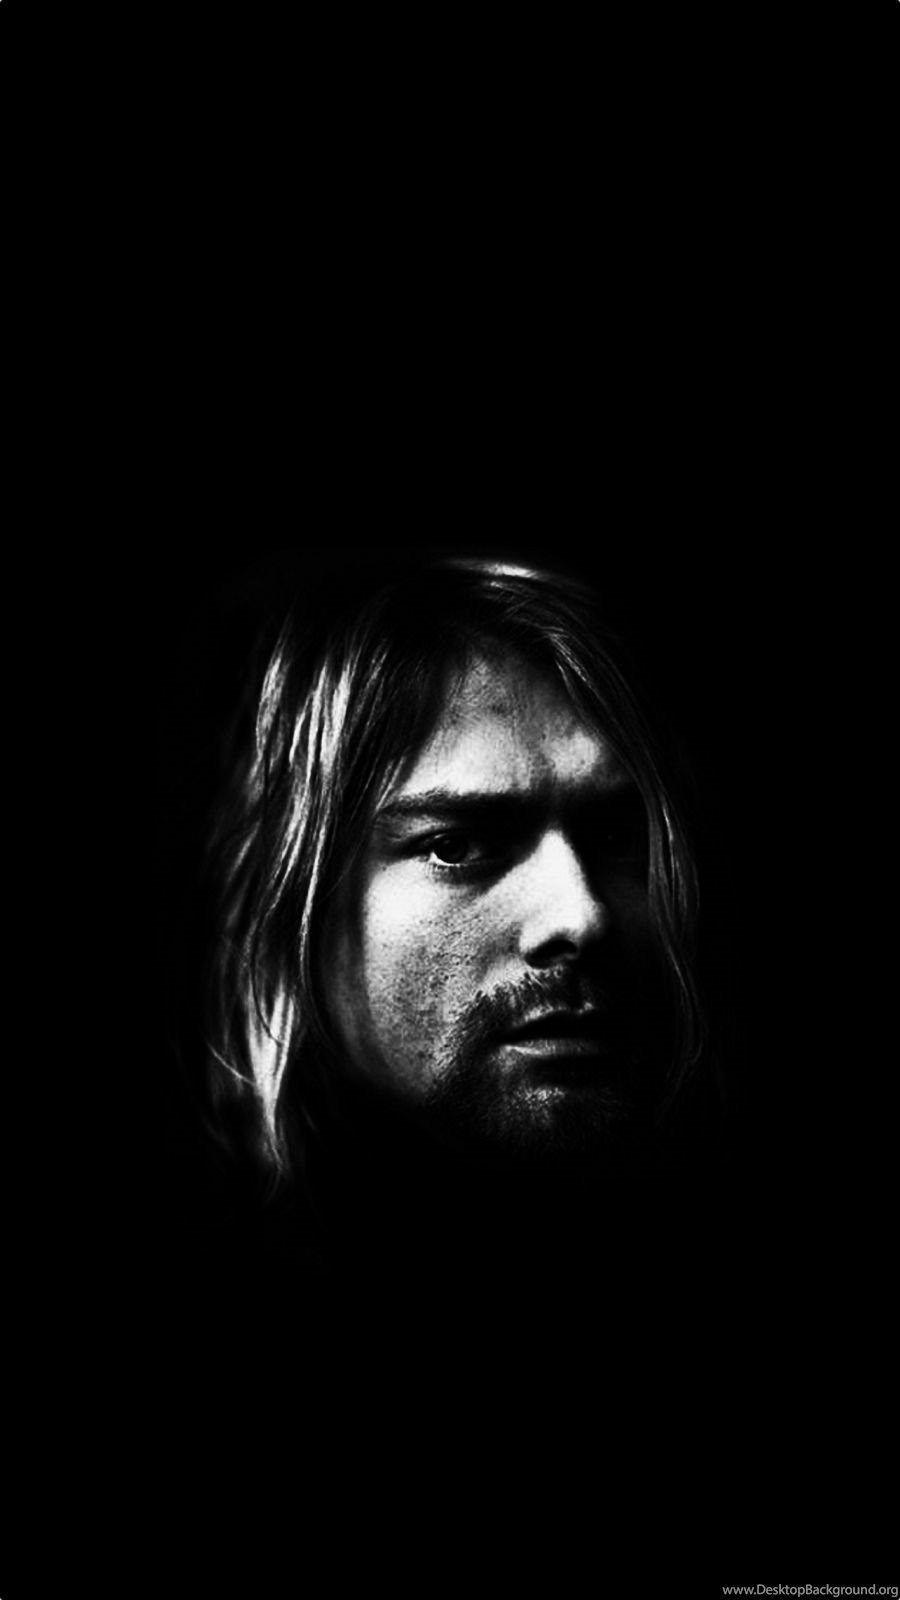 Kurt Cobain Iphone Wallpapers Top Free Kurt Cobain Iphone Backgrounds Wallpaperaccess 2684